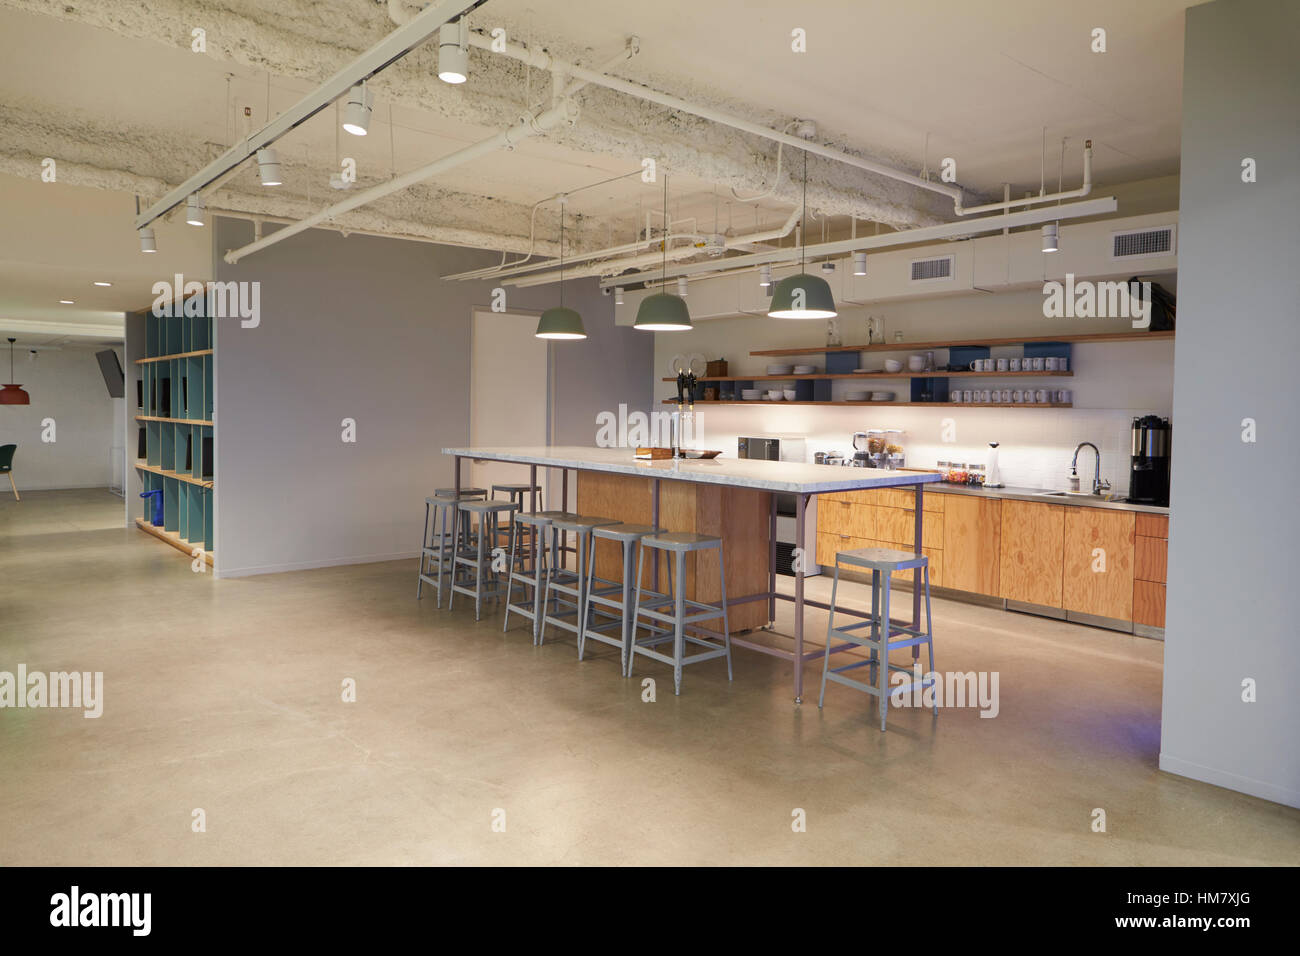 La cafétéria d'entreprise de l'espace cuisine, Los Angeles Banque D'Images